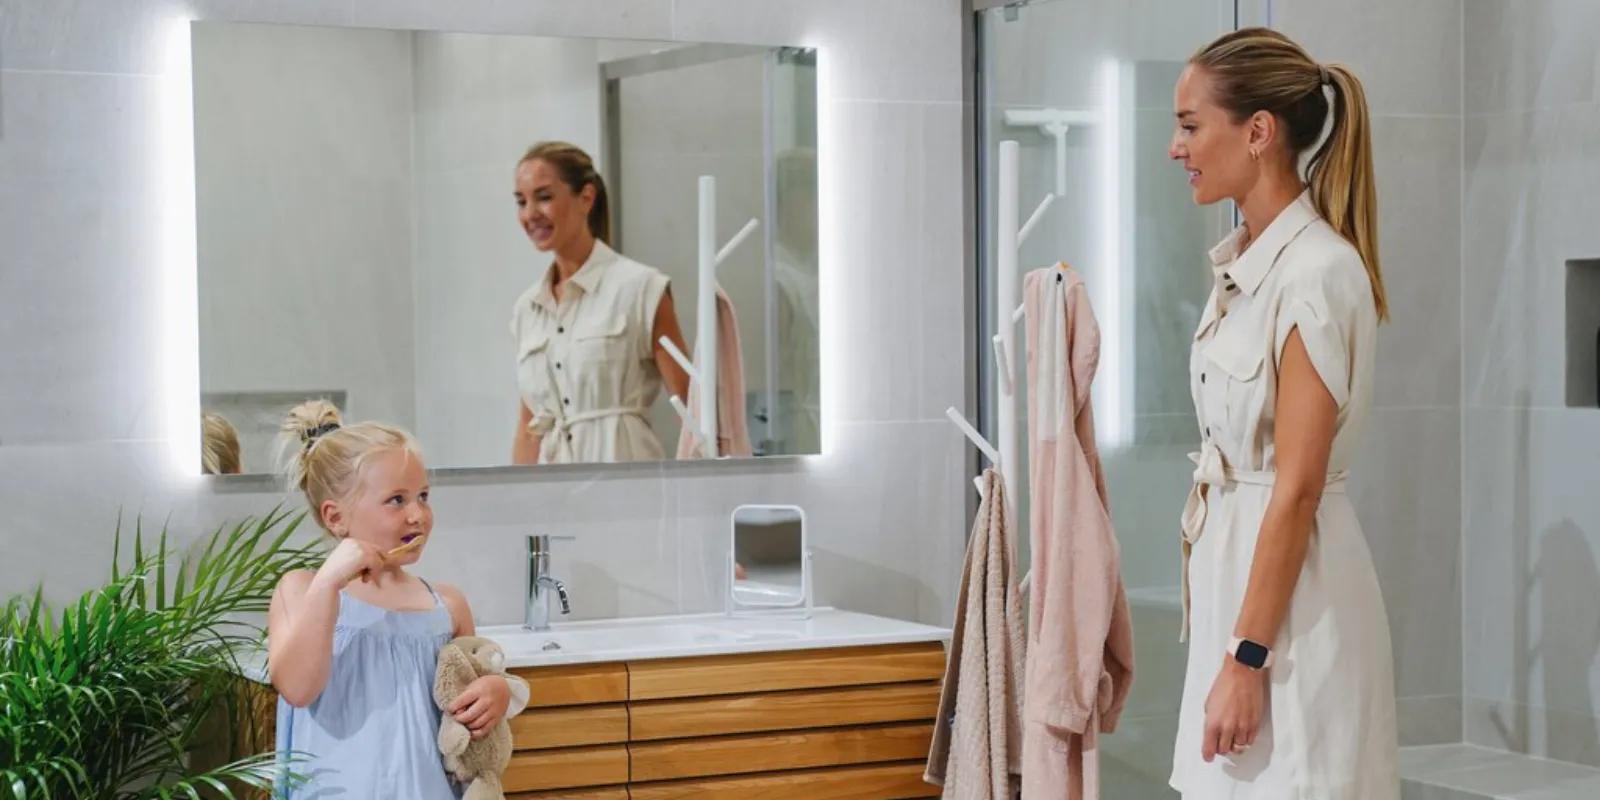 10 viktige ting å tenke på når du skal pusse opp baderommet